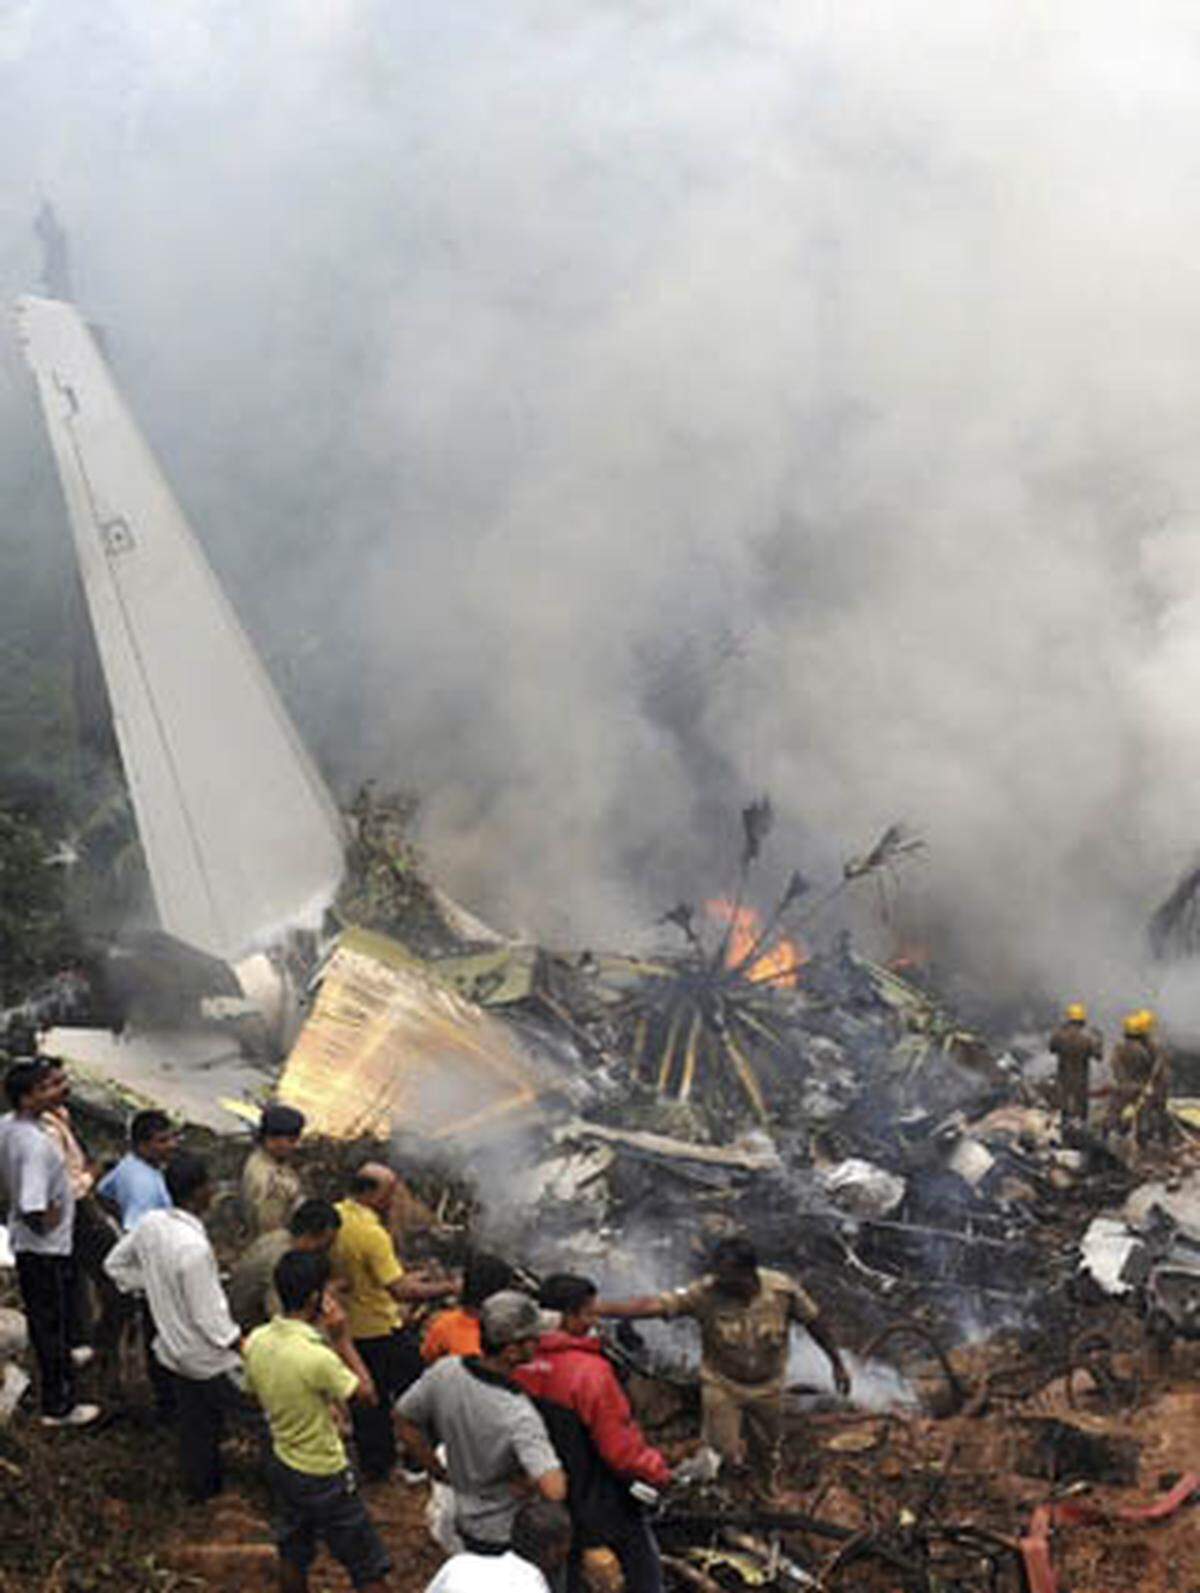 Die Ursache für das Unglück ist noch unklar. Die Aussagen der Überlebenden weisen darauf hin, dass die Boeing zunächst sicher landete, allerdings hätten sie dabei Geräusche gehört, möglicherweise sei ein Reifen geplatzt.